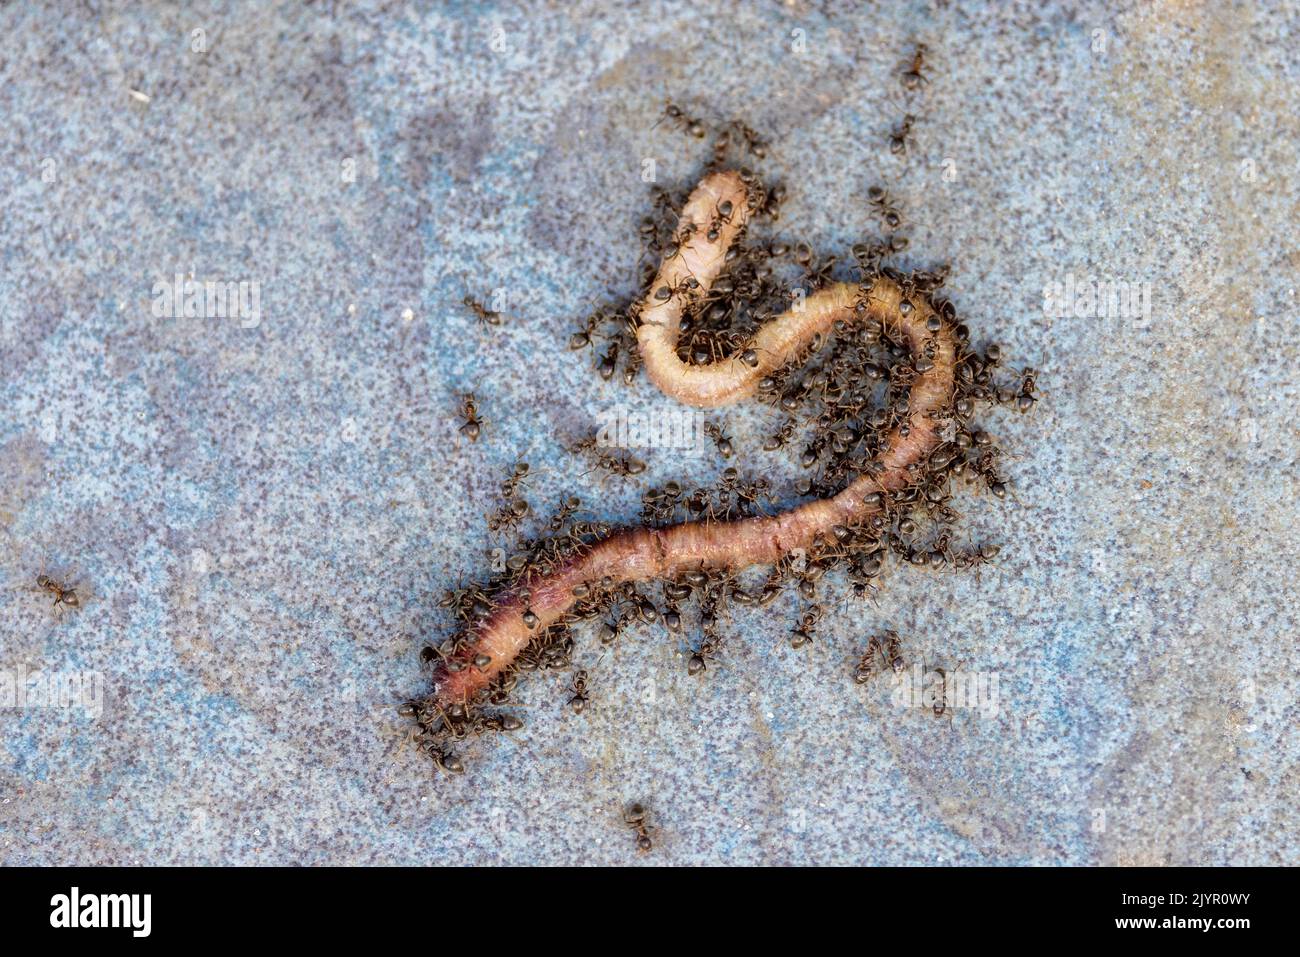 Garden ants (Lasius niger) attacking an earthworm, spring, Pas de Calais, France Stock Photo